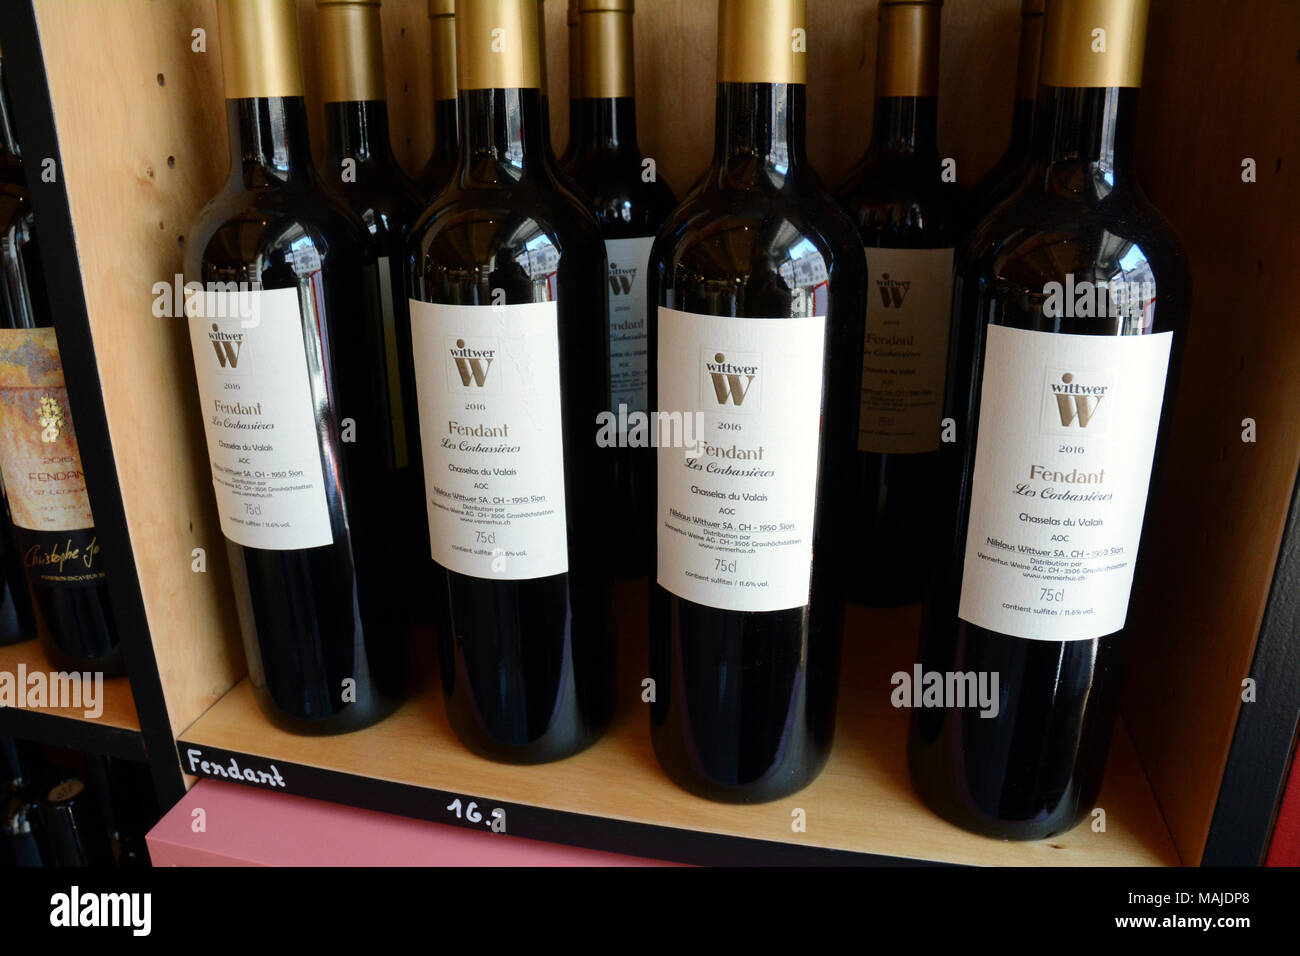 Flaschen Fendant Wein - ein Schweizer weiß (auch als Chasselas), deren Trauben in der Region Wallis wachsen - in einem Store in Sion, Schweiz. Stockfoto